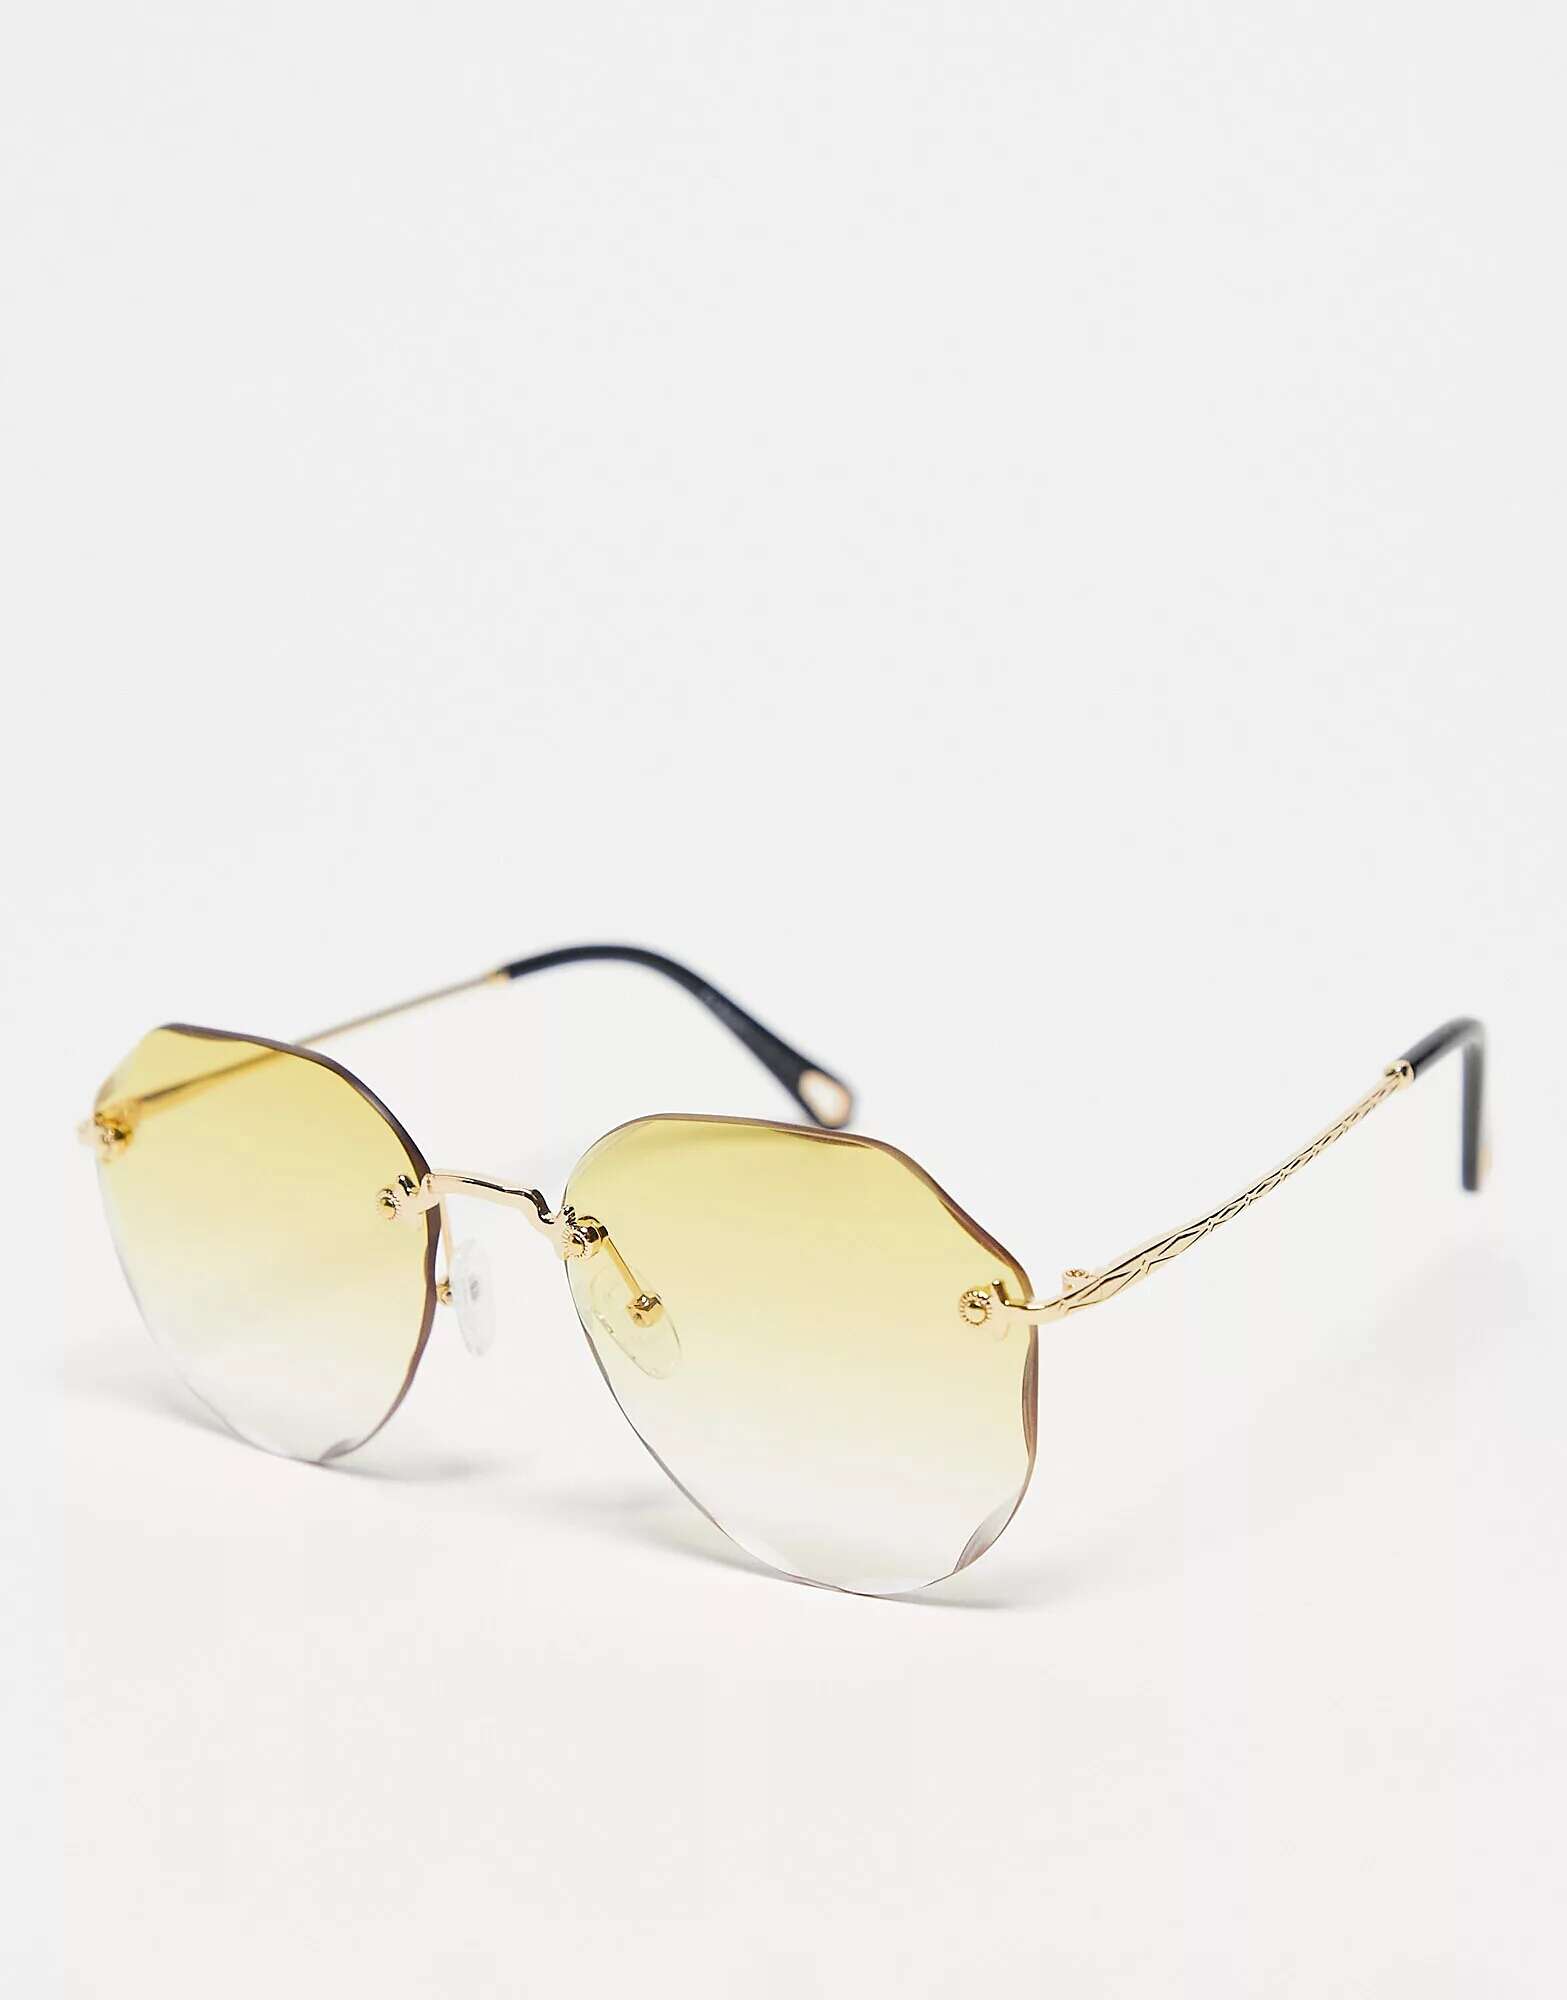 Золотые солнцезащитные очки в форме шантильи AJ Morgan цена и фото